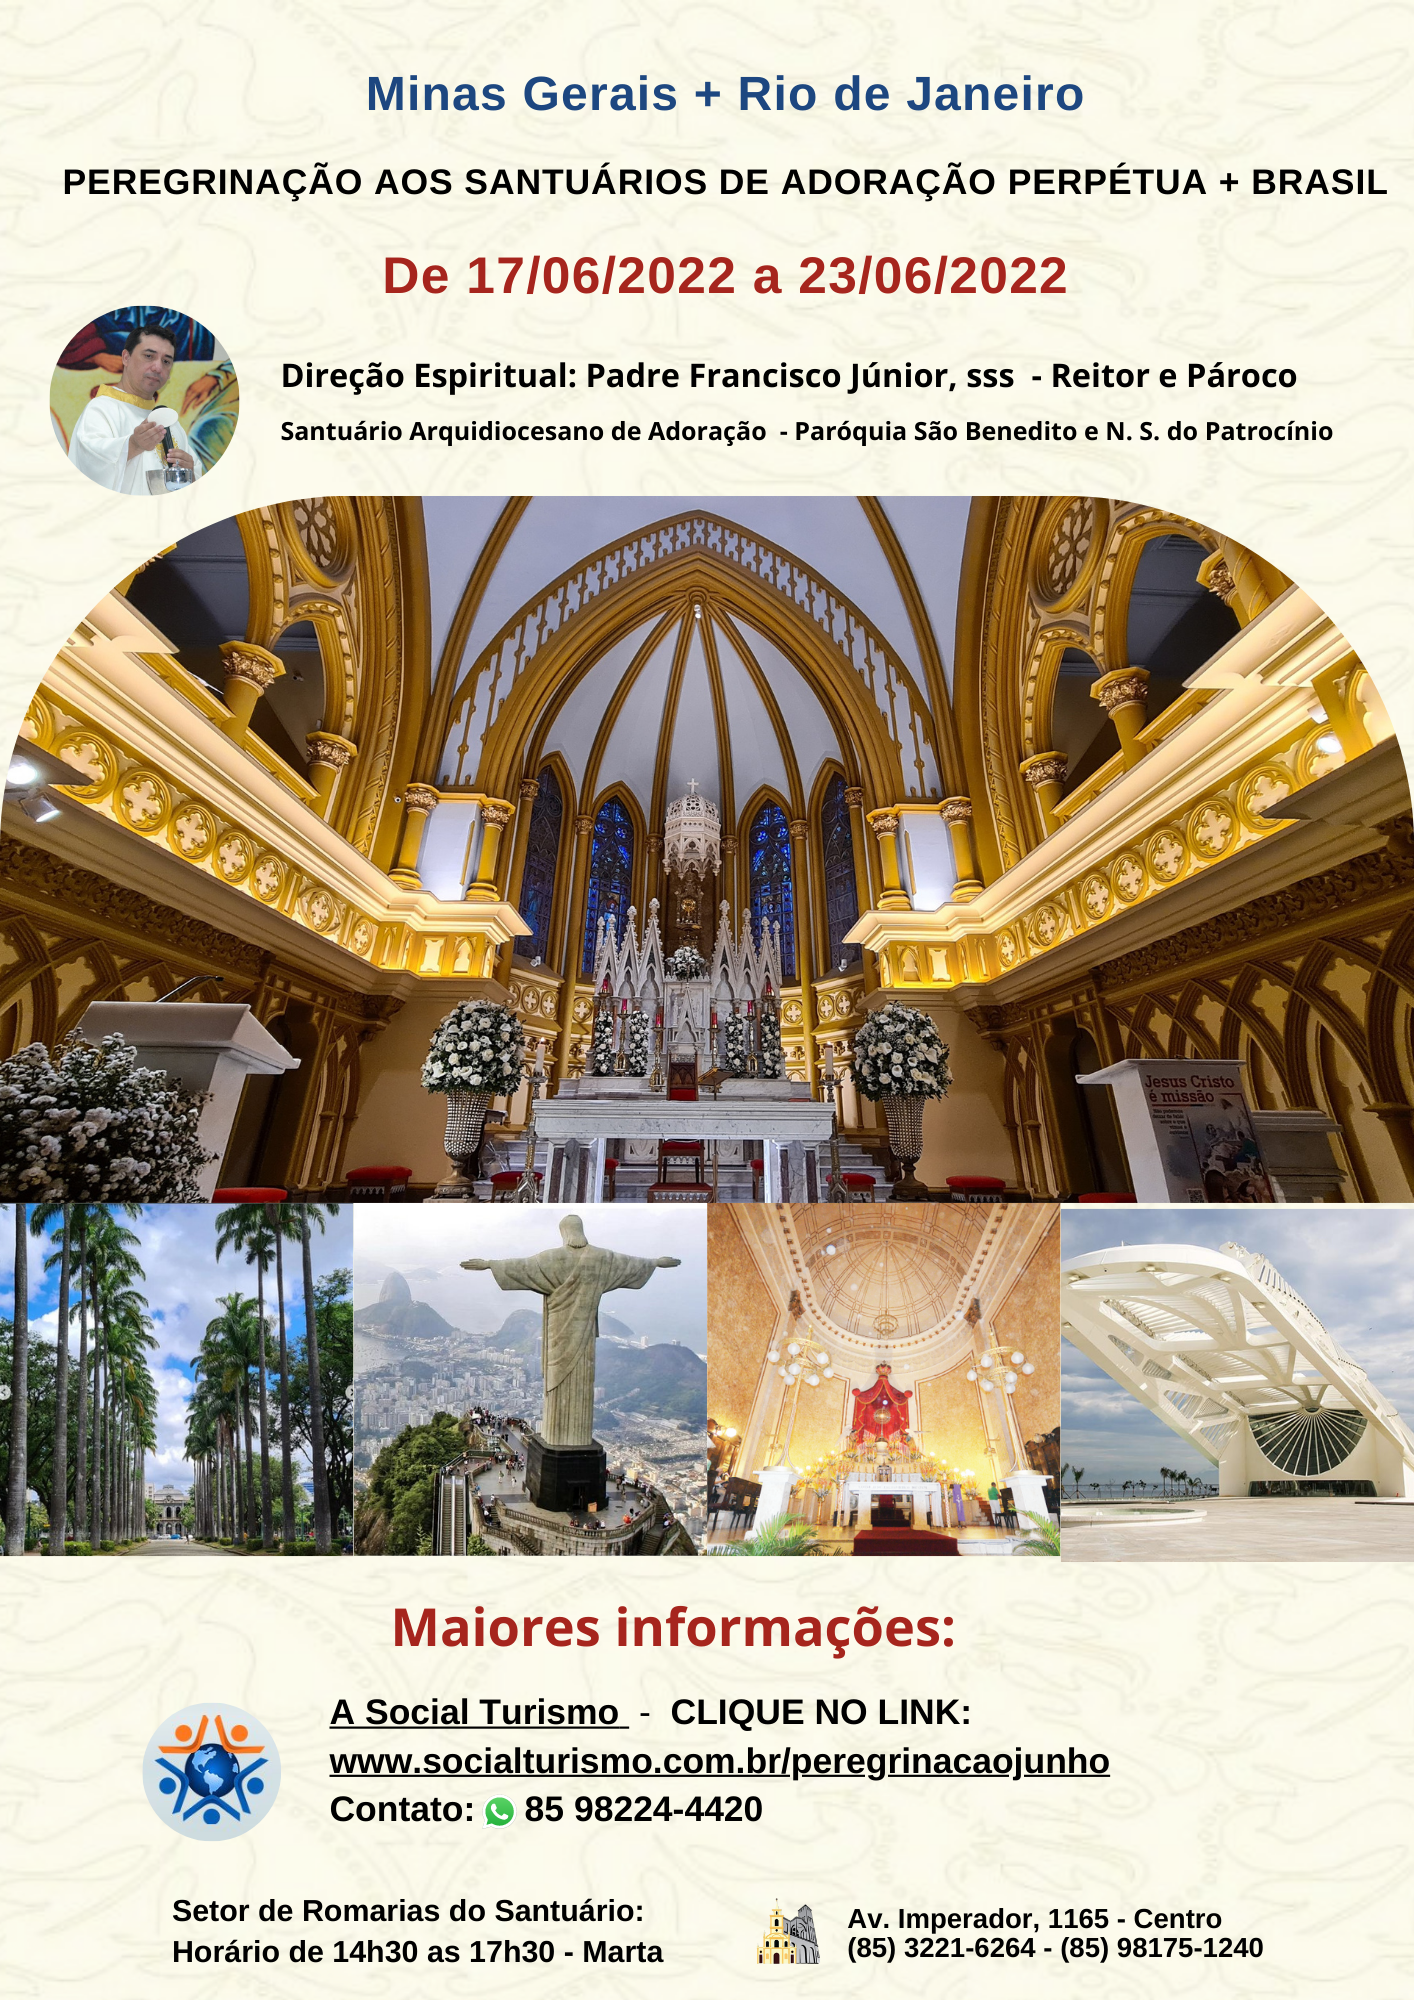 Peregrinação aos Santuários Eucarísticos de Adoração Perpétua no Brasil.